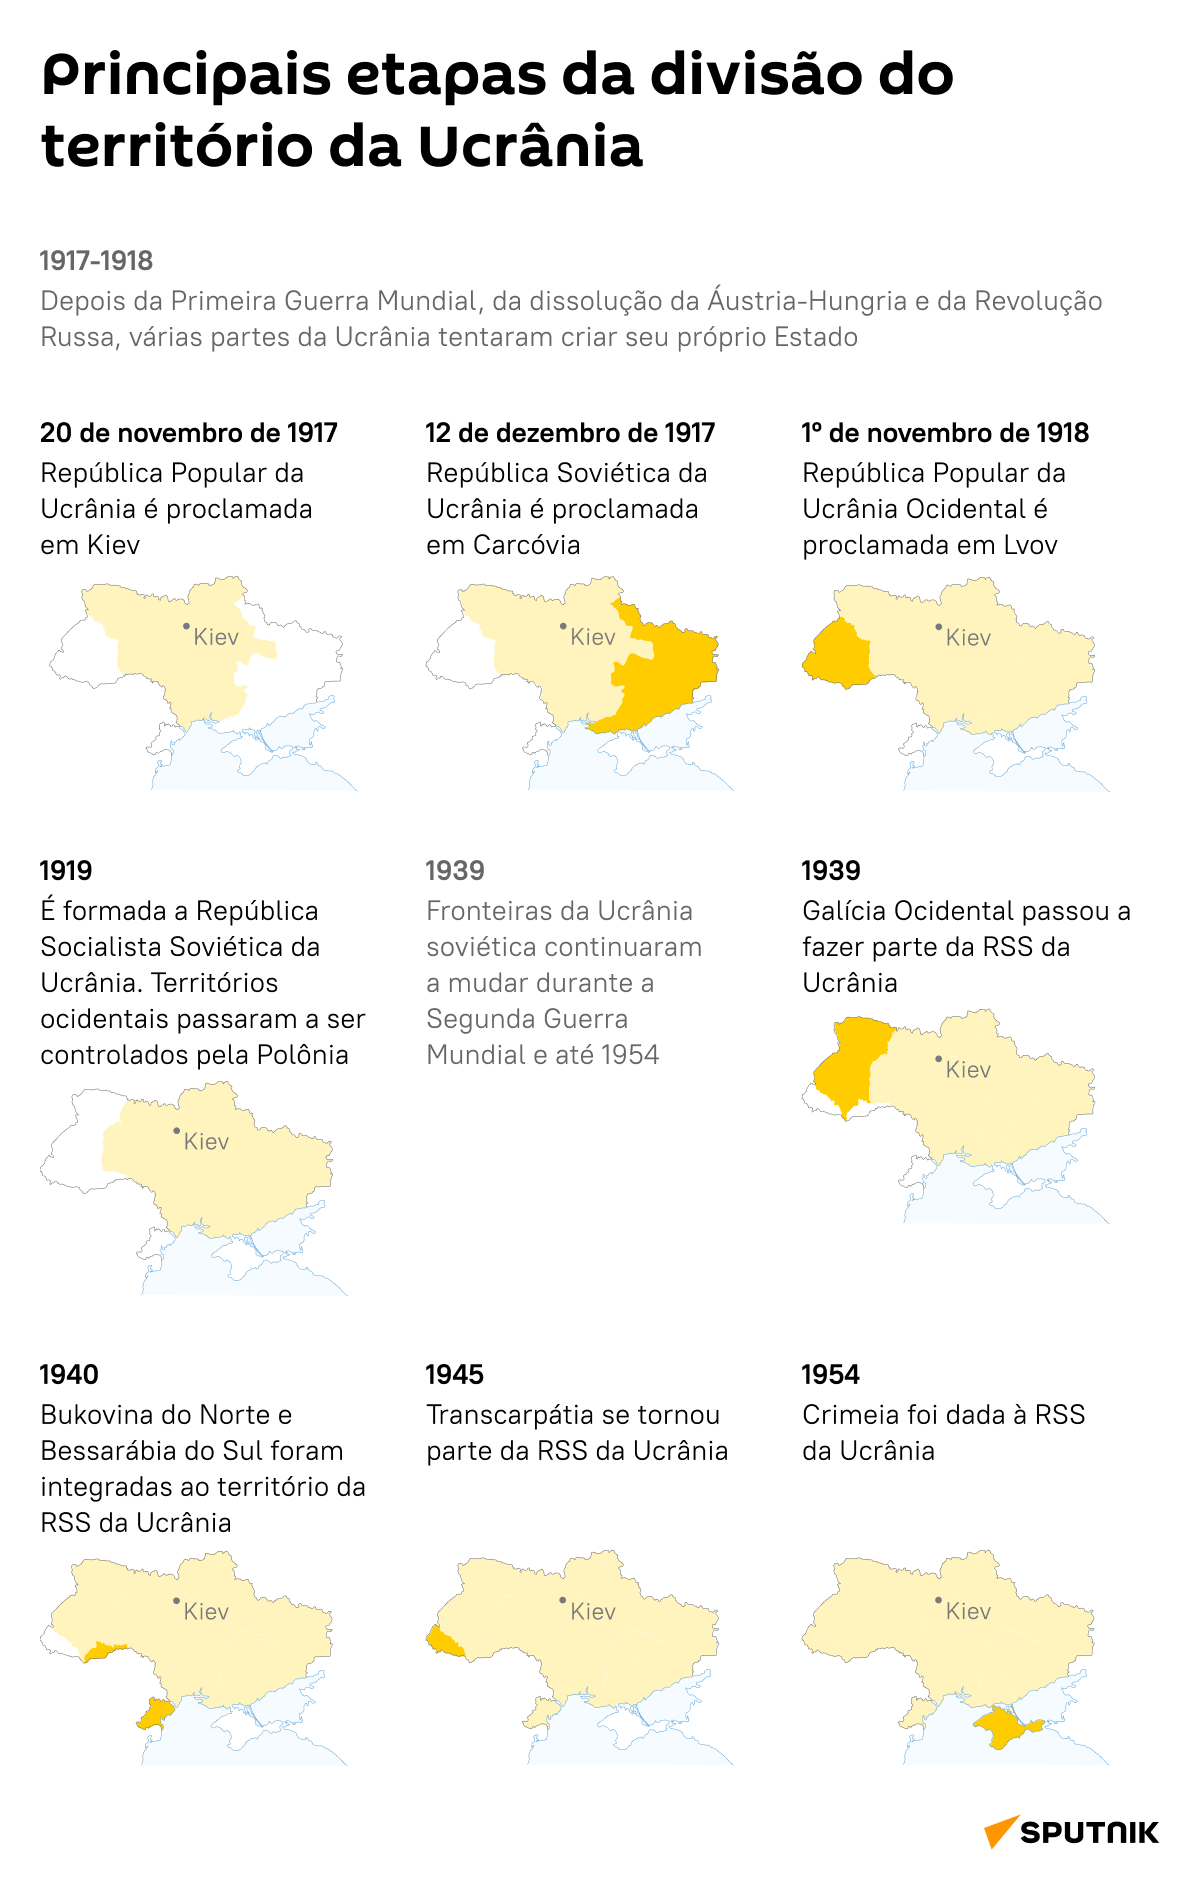 Principais etapas da divisão territorial na Ucrânia - Sputnik Brasil